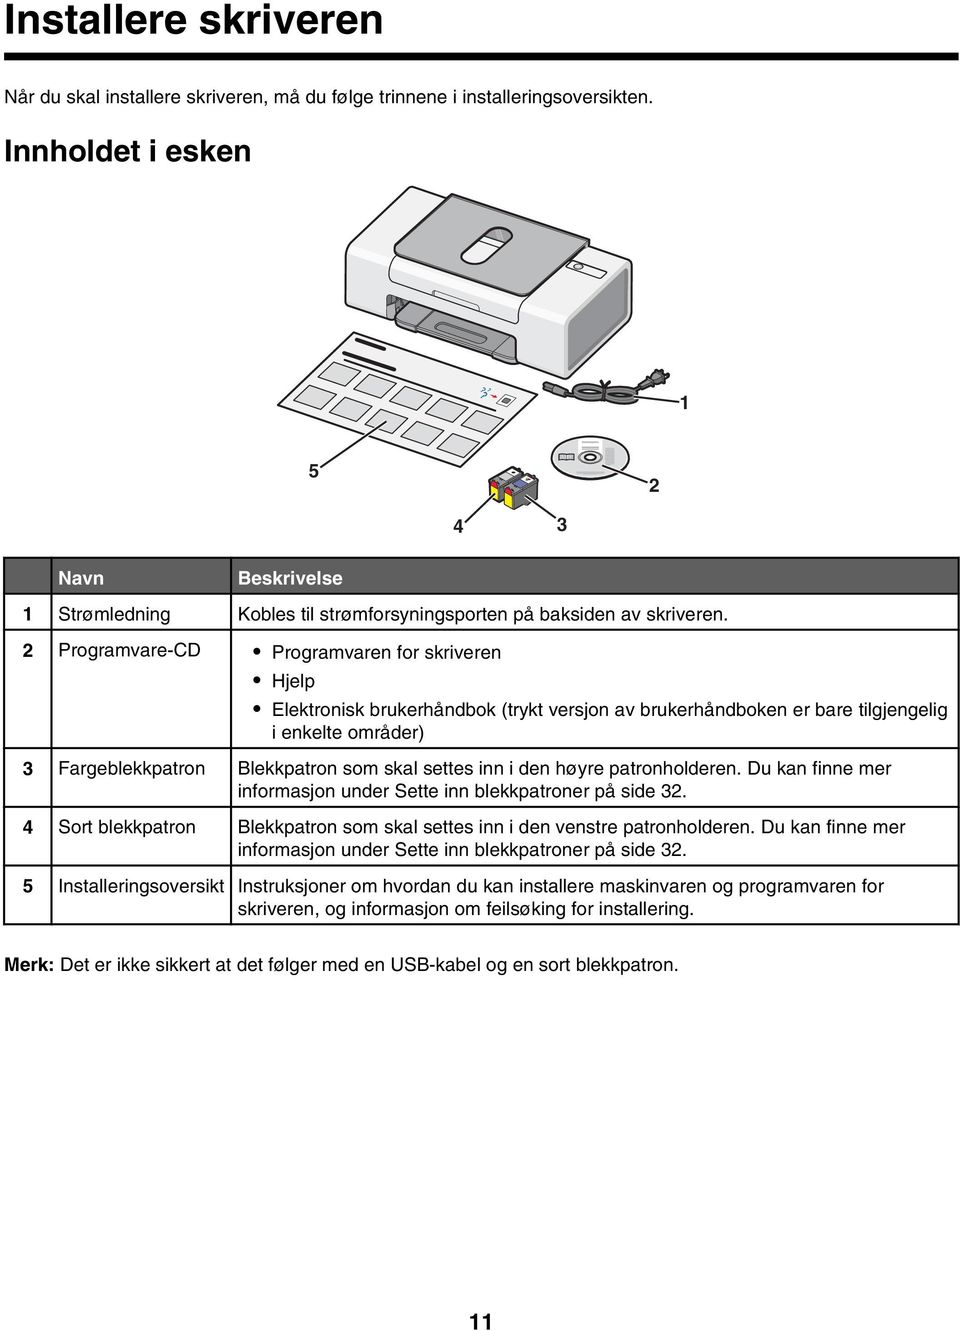 2 Programvare-CD Programvaren for skriveren Hjelp Elektronisk brukerhåndbok (trykt versjon av brukerhåndboken er bare tilgjengelig i enkelte områder) 3 Fargeblekkpatron Blekkpatron som skal settes